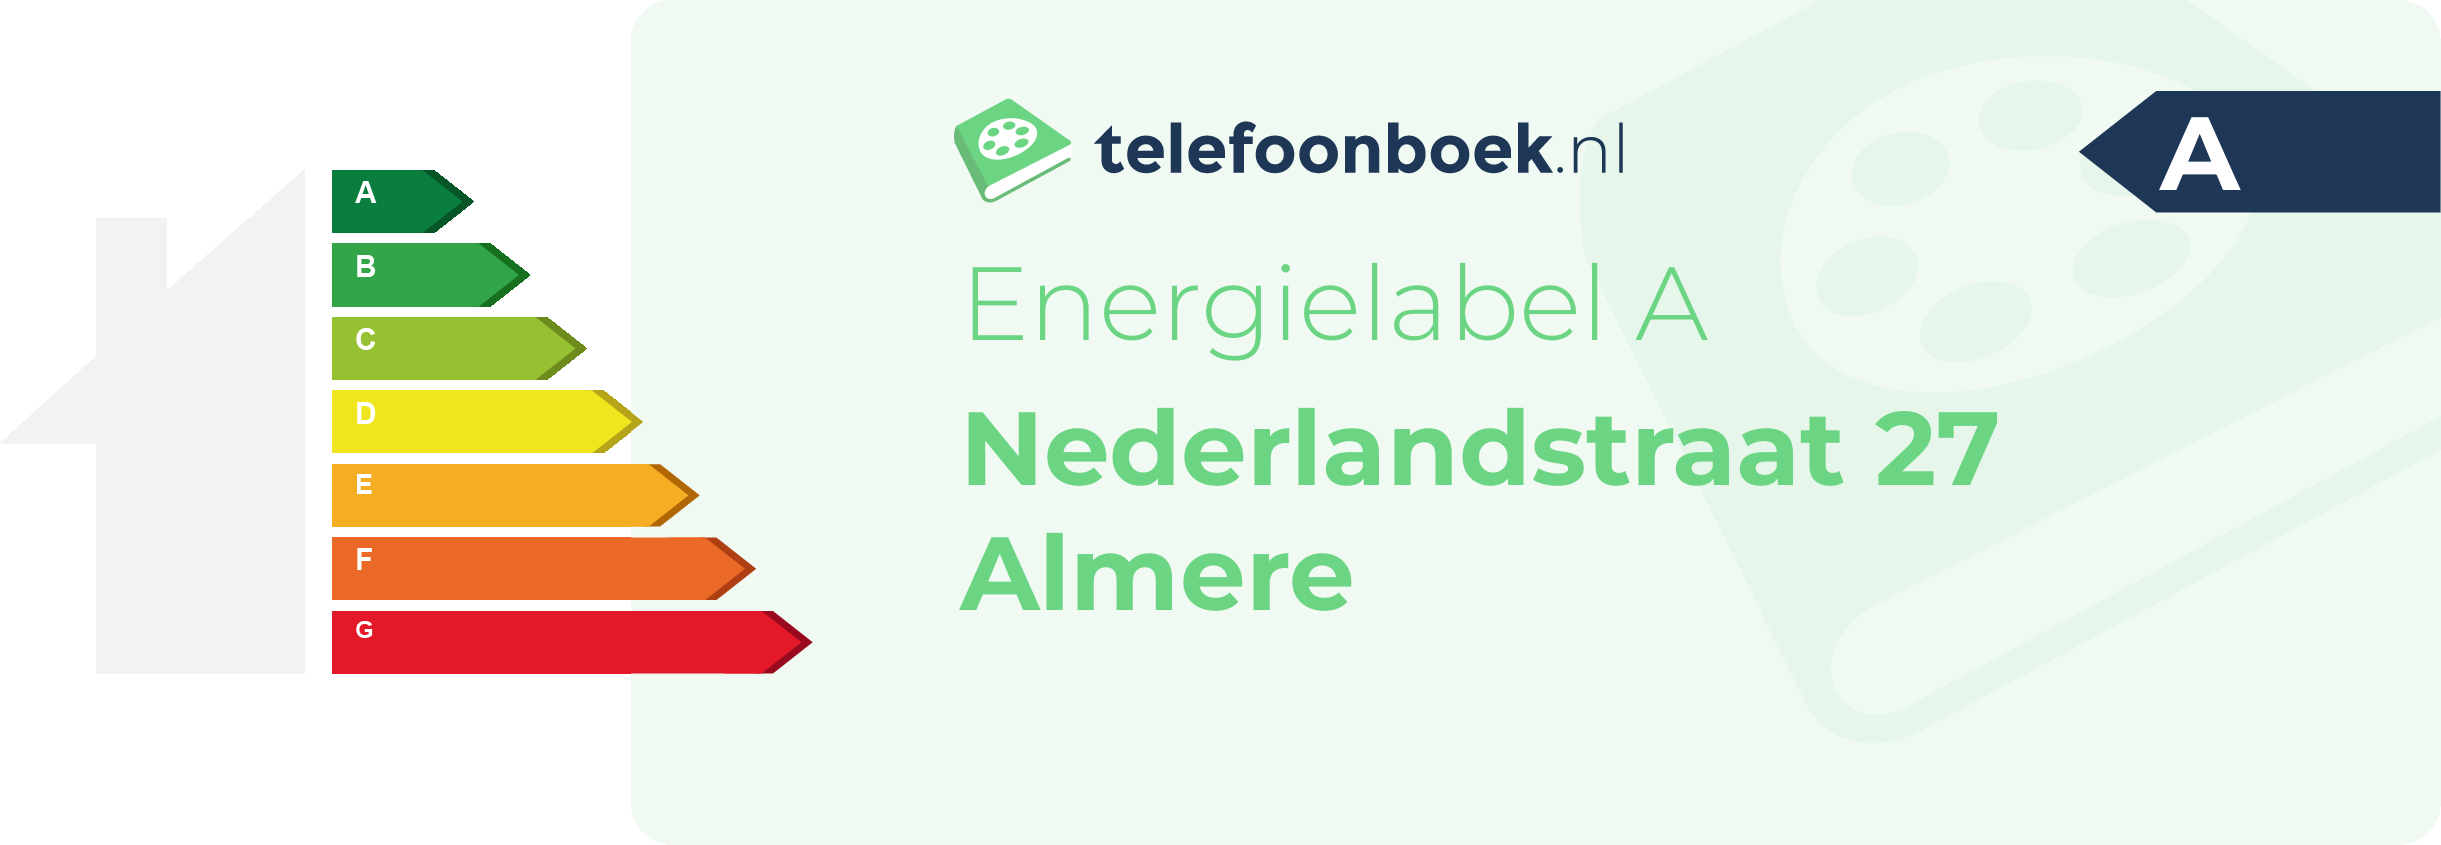 Energielabel Nederlandstraat 27 Almere